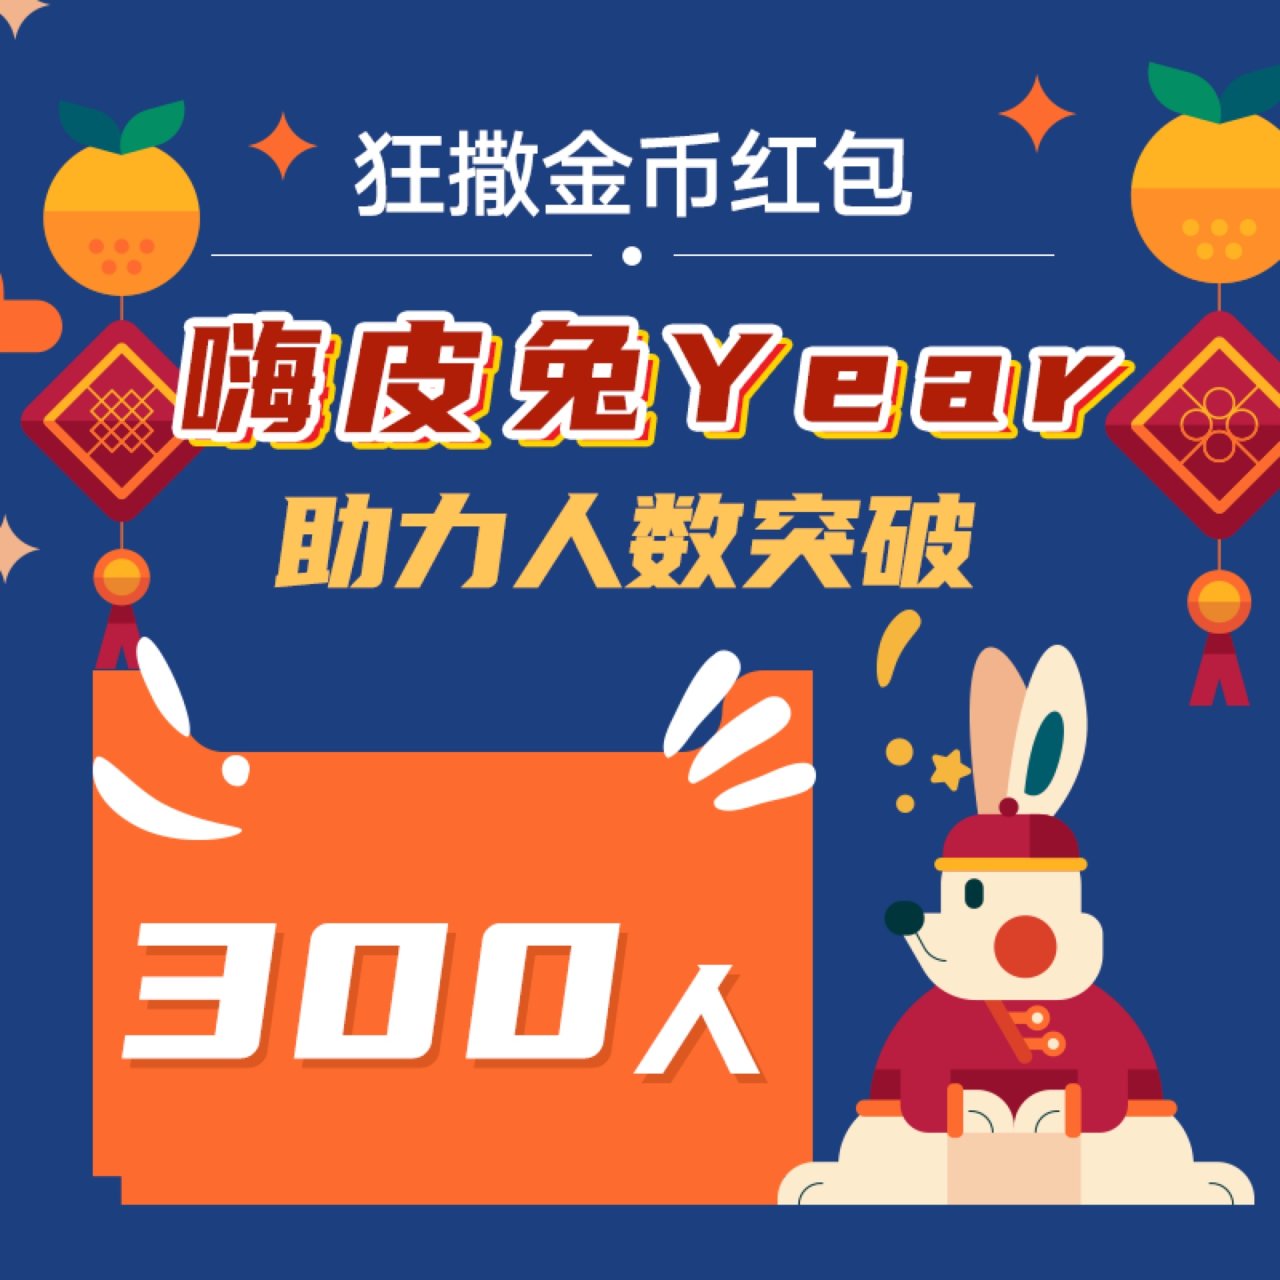 【好消息】#嗨皮兔Year 助力人数突破...